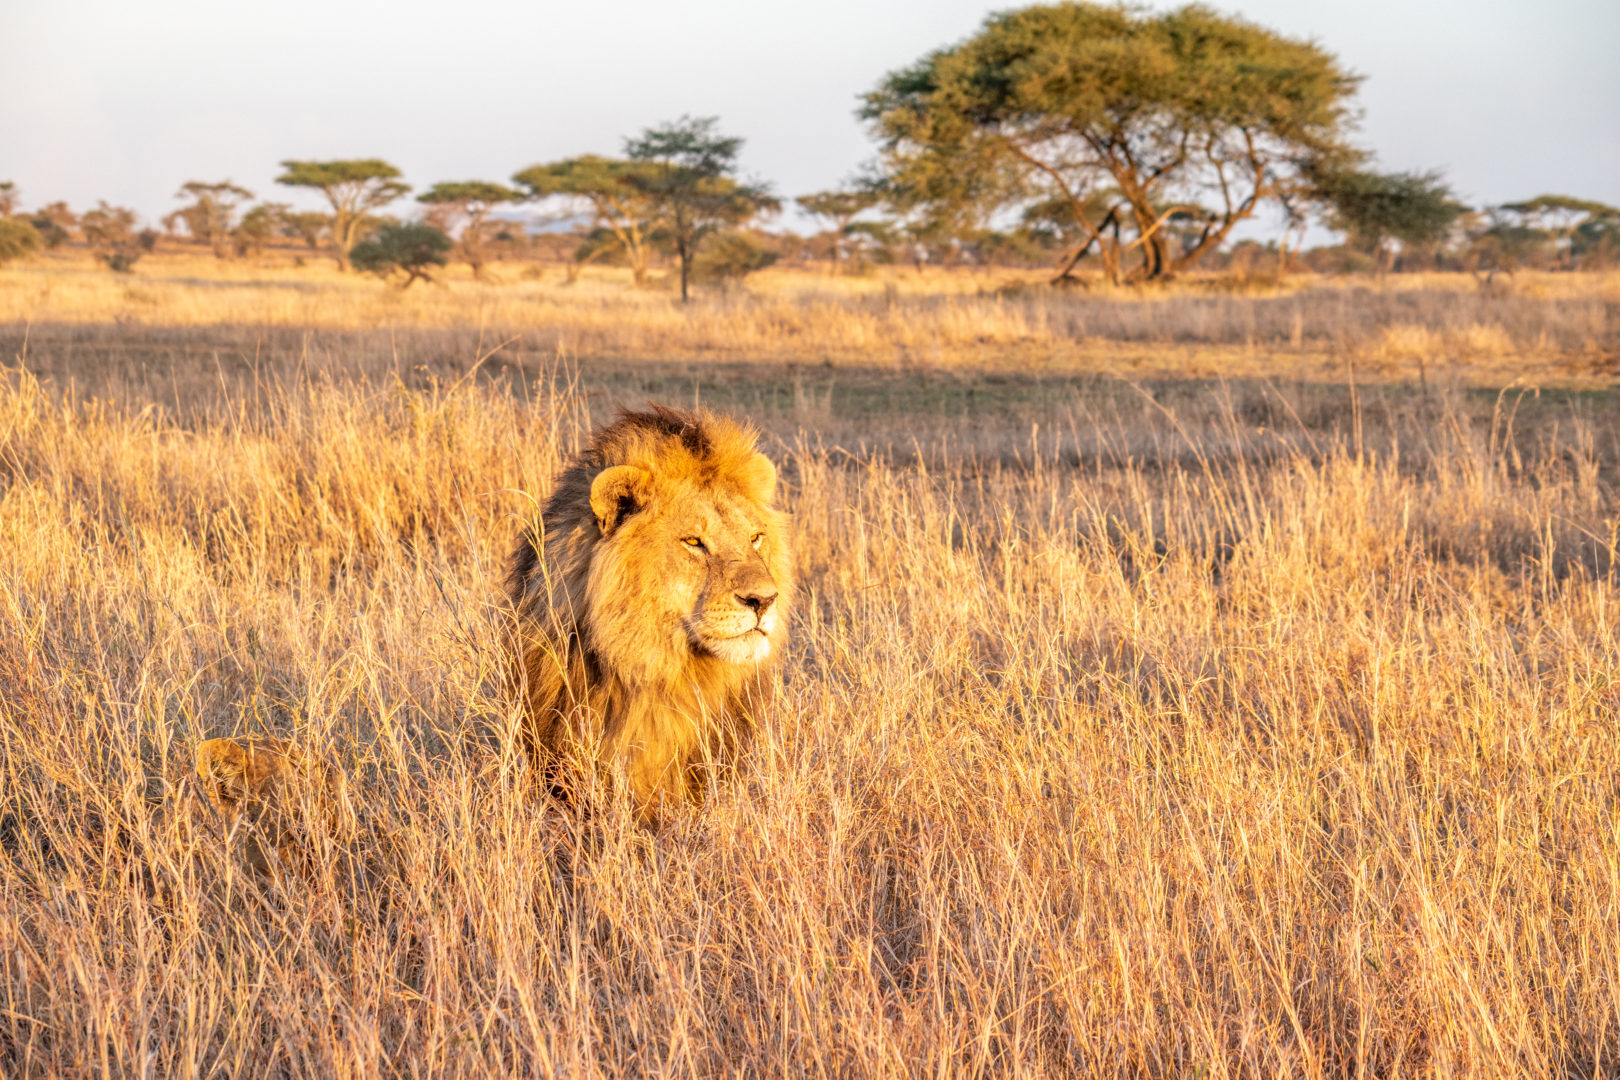 Löwe in der Savanne, Reise nach Tansania